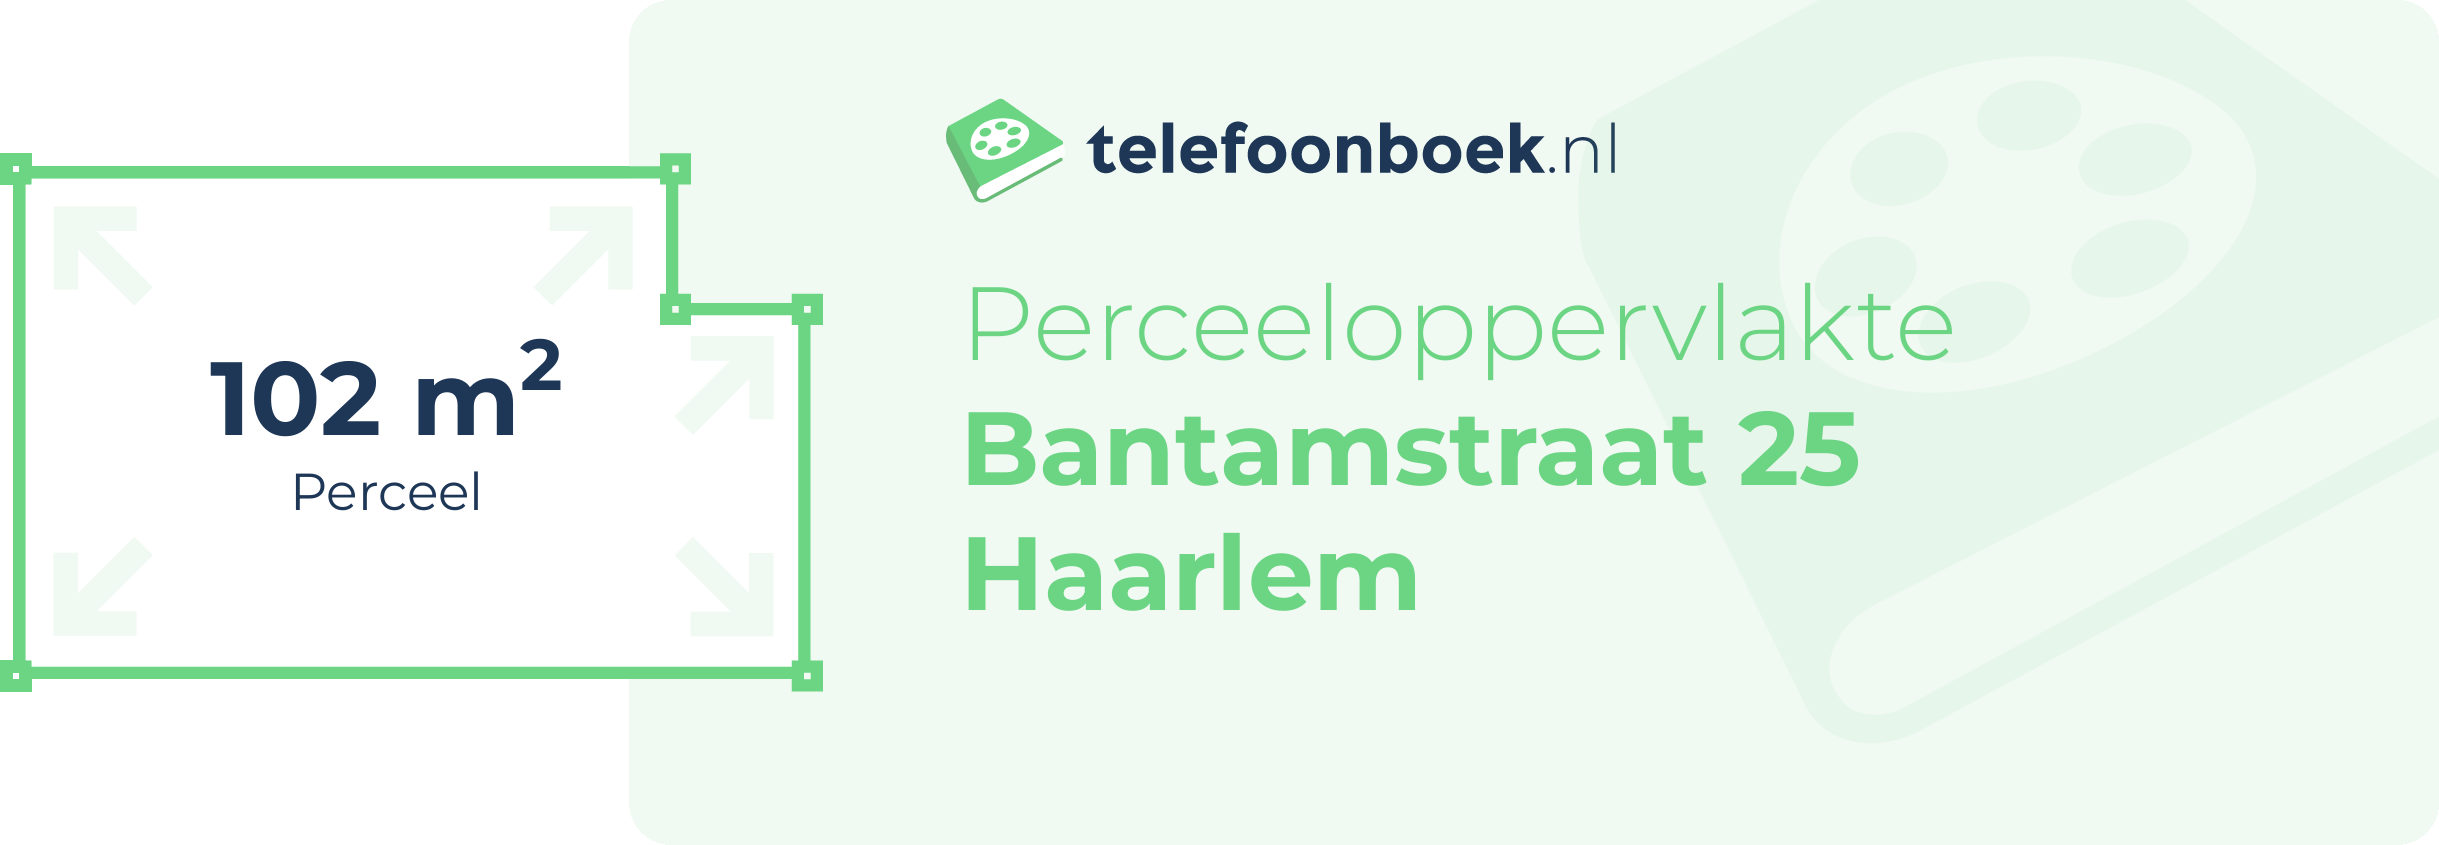 Perceeloppervlakte Bantamstraat 25 Haarlem